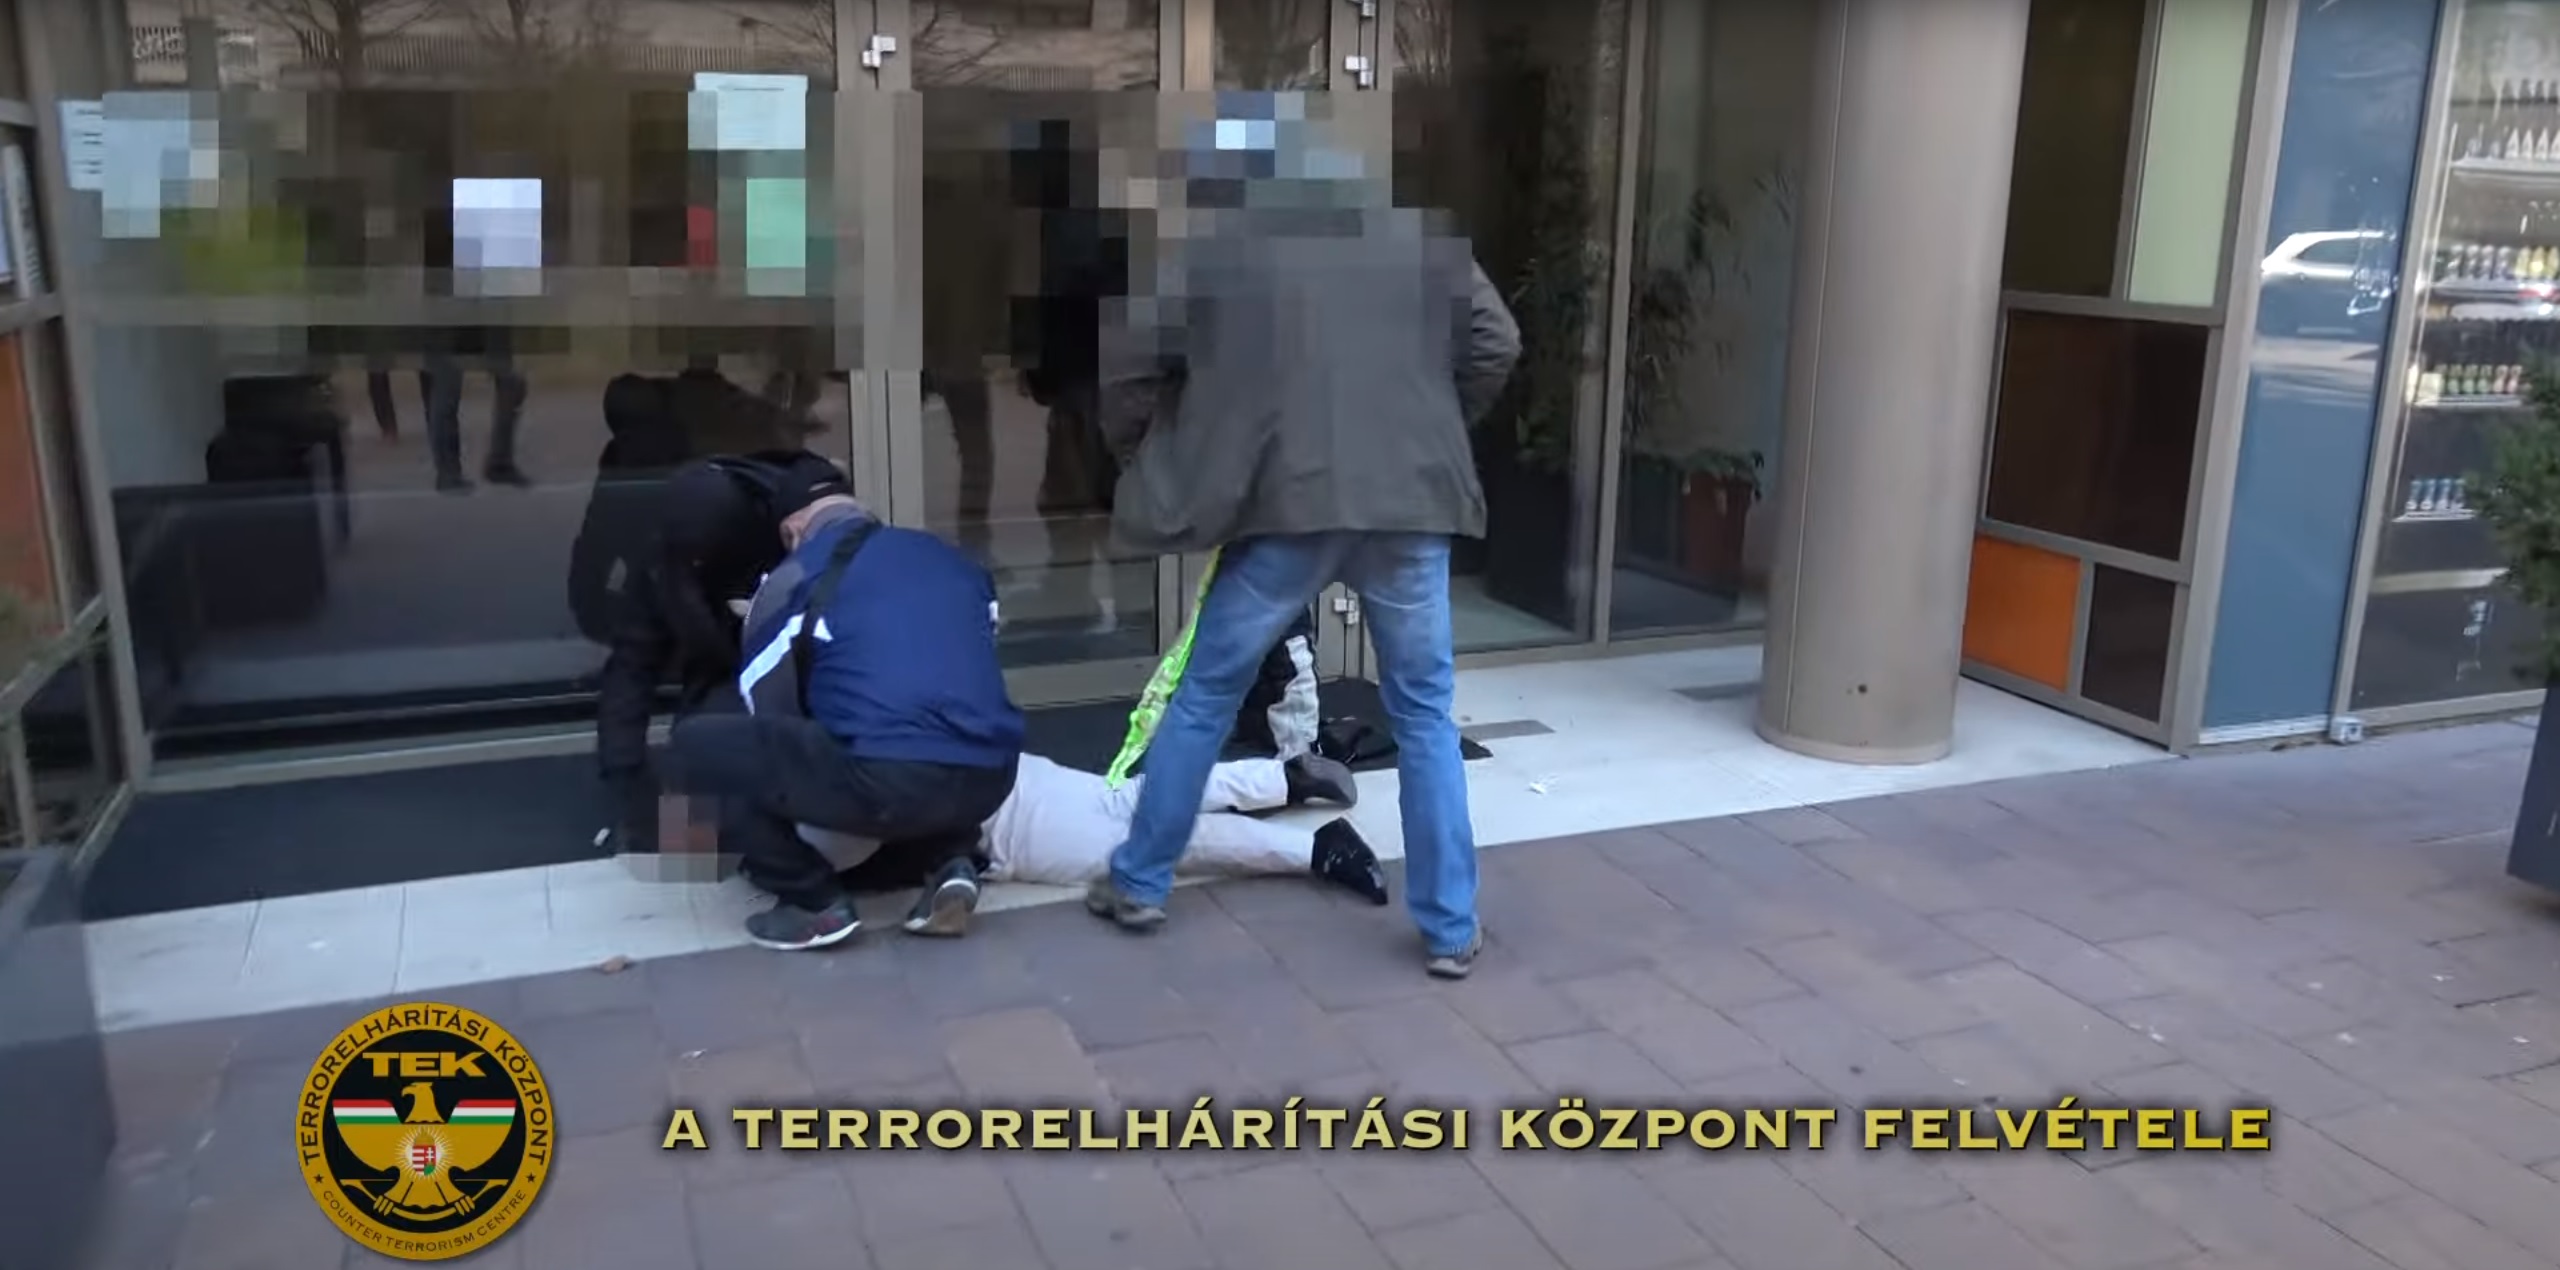 बुडापेस्ट में अपहरण, बंधक बनाने, सशस्त्र डकैती के आरोप में पोलिश व्यक्ति गिरफ्तार